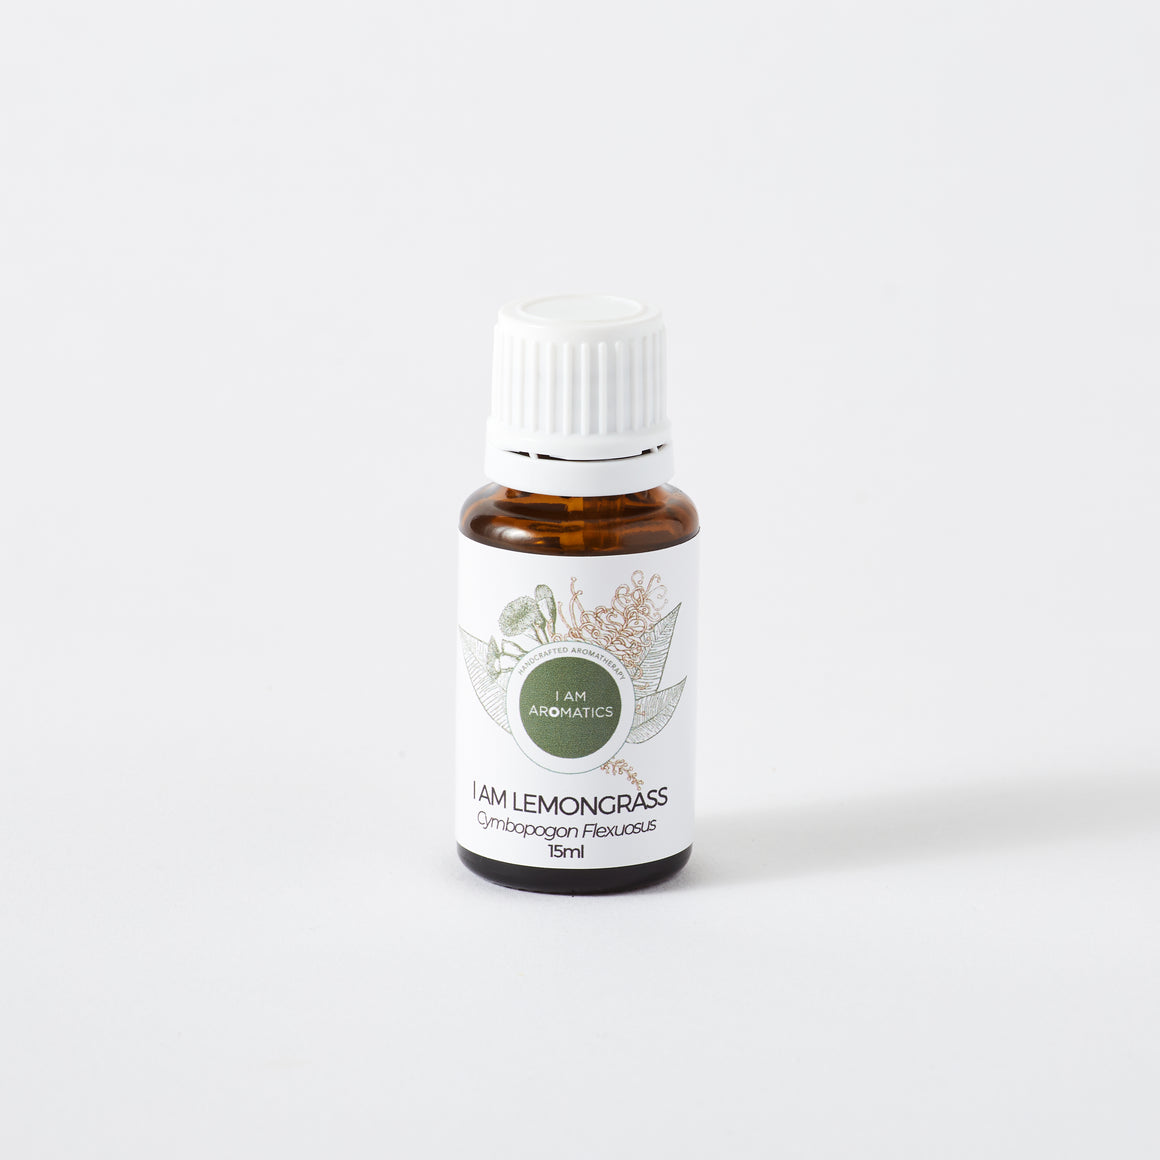 lemongrass essetnial oil in 15ml amber bottle with white lid, botanical logo, white label